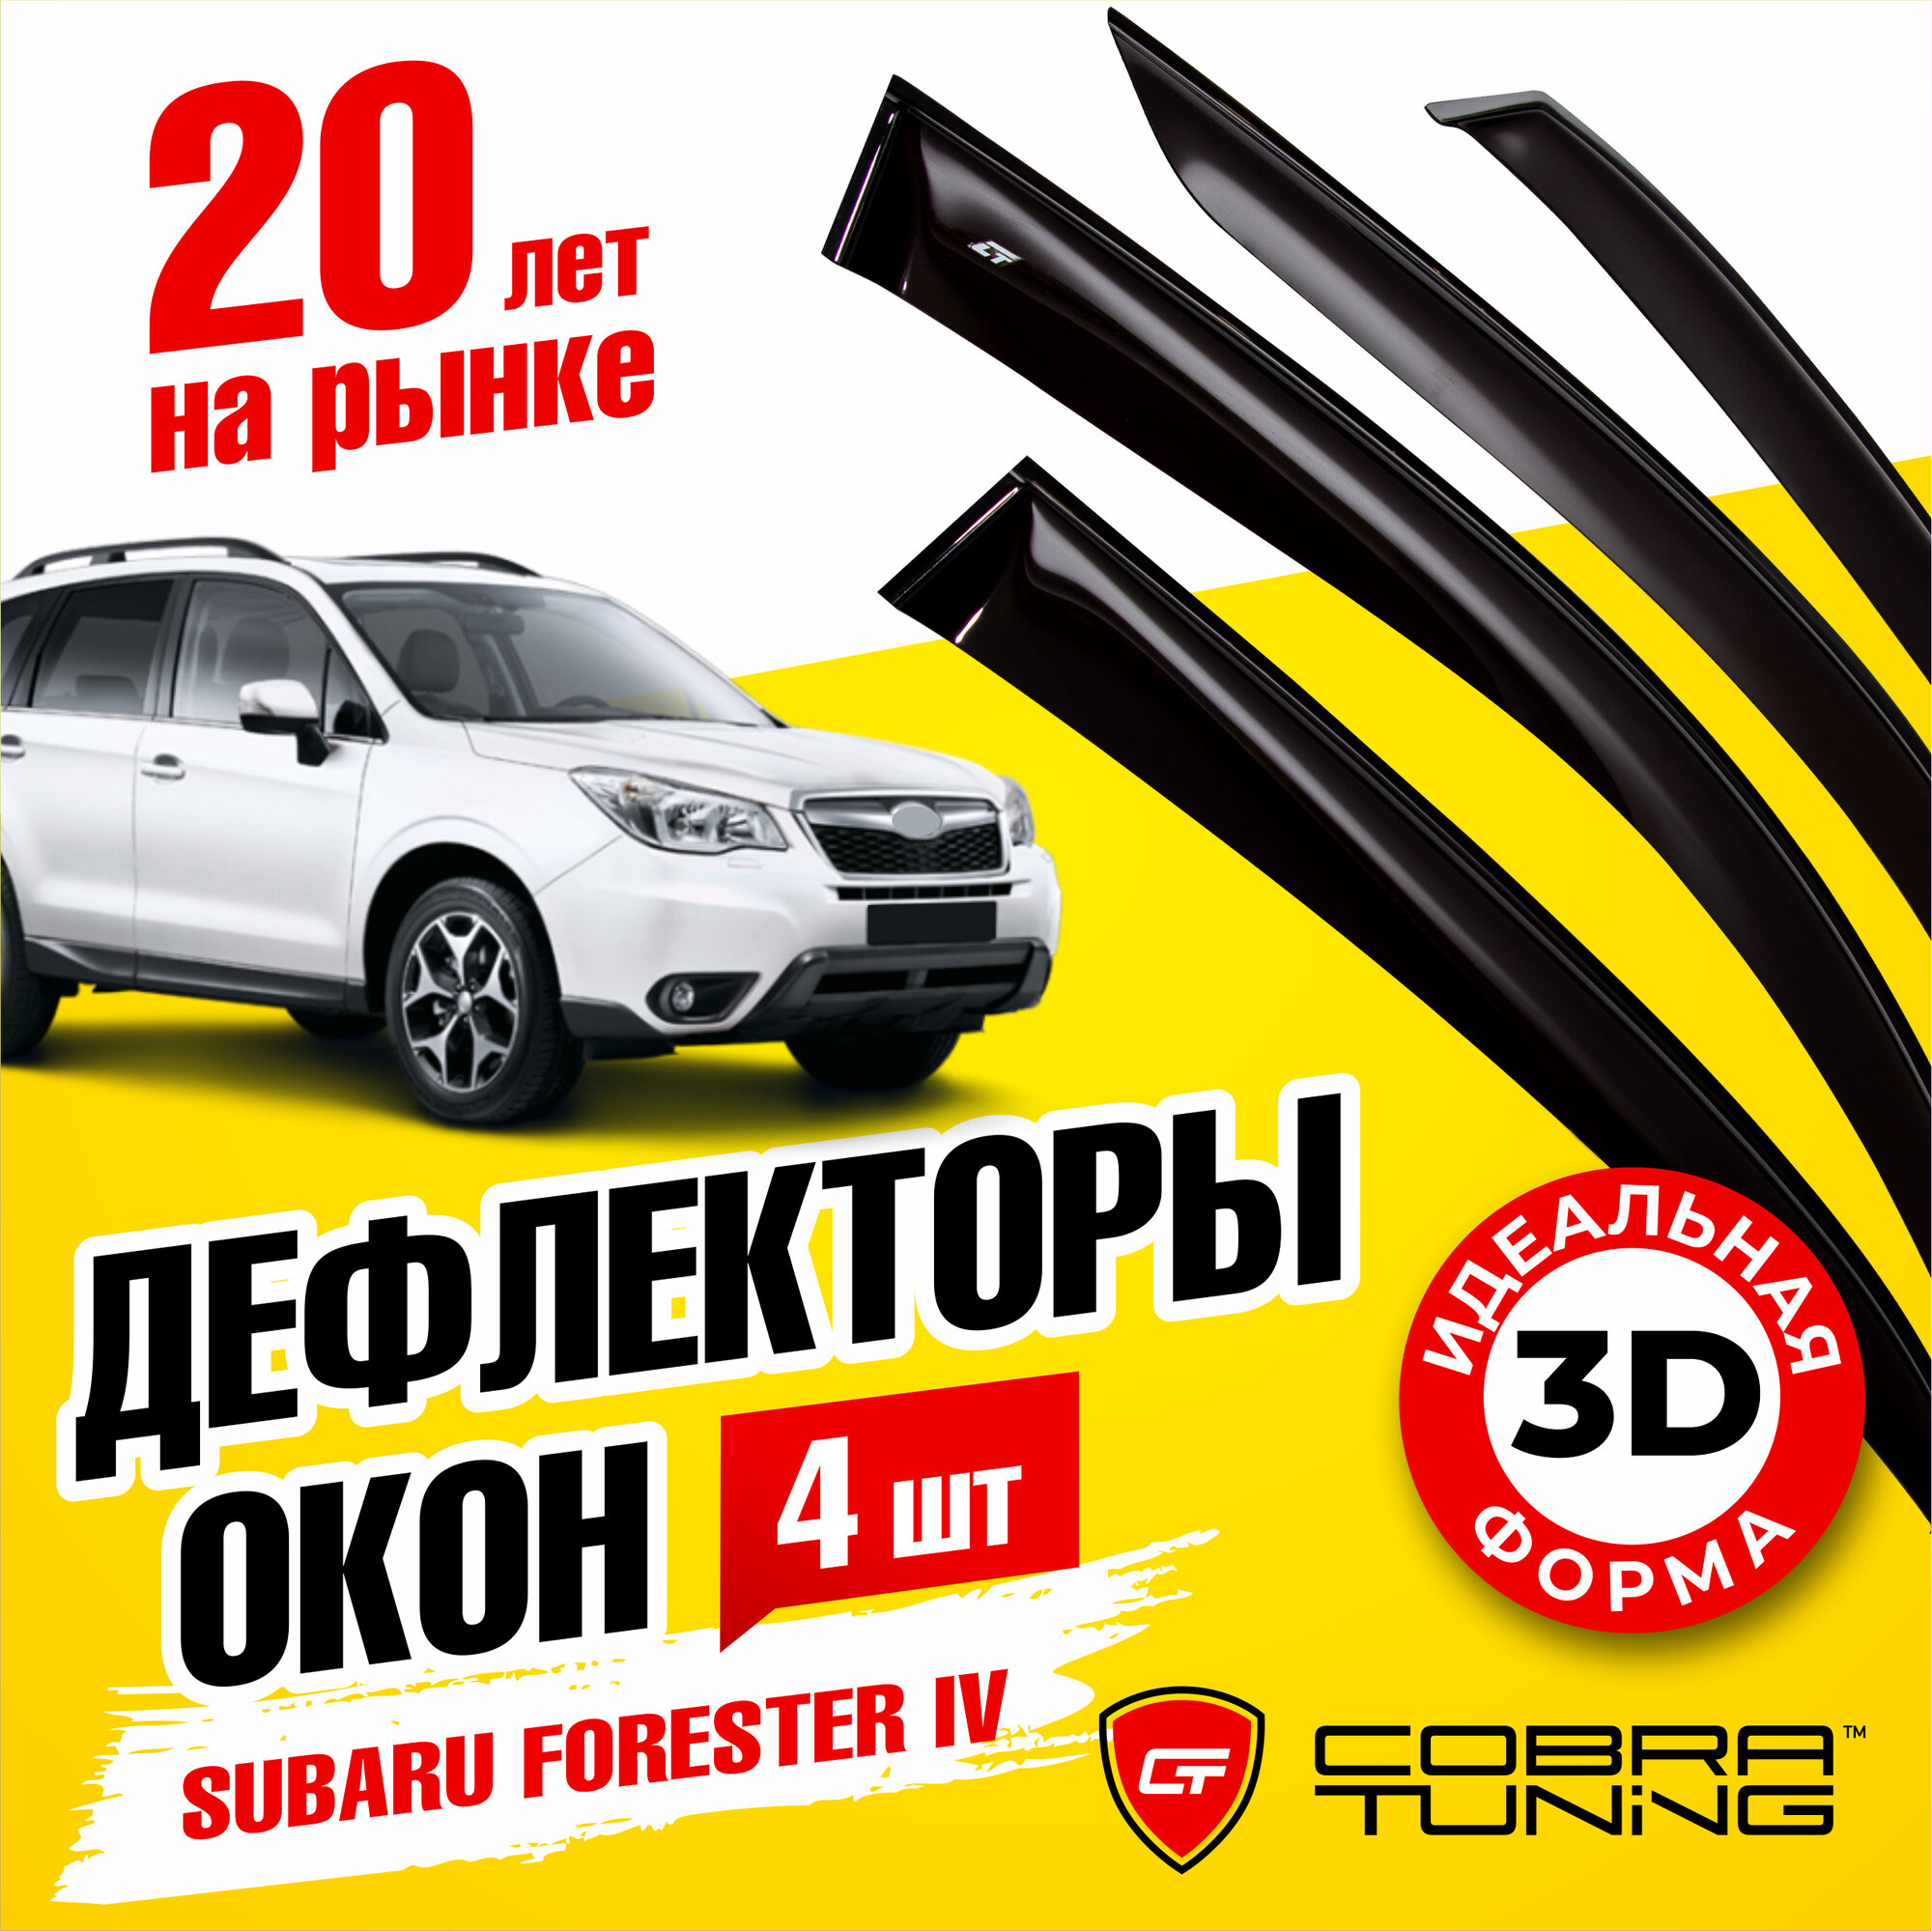 Дефлекторы боковых окон для Subaru Forester IV (Субару Форестер 4) 2012-2018 ветровики с хром молдингом Cobra Tuning